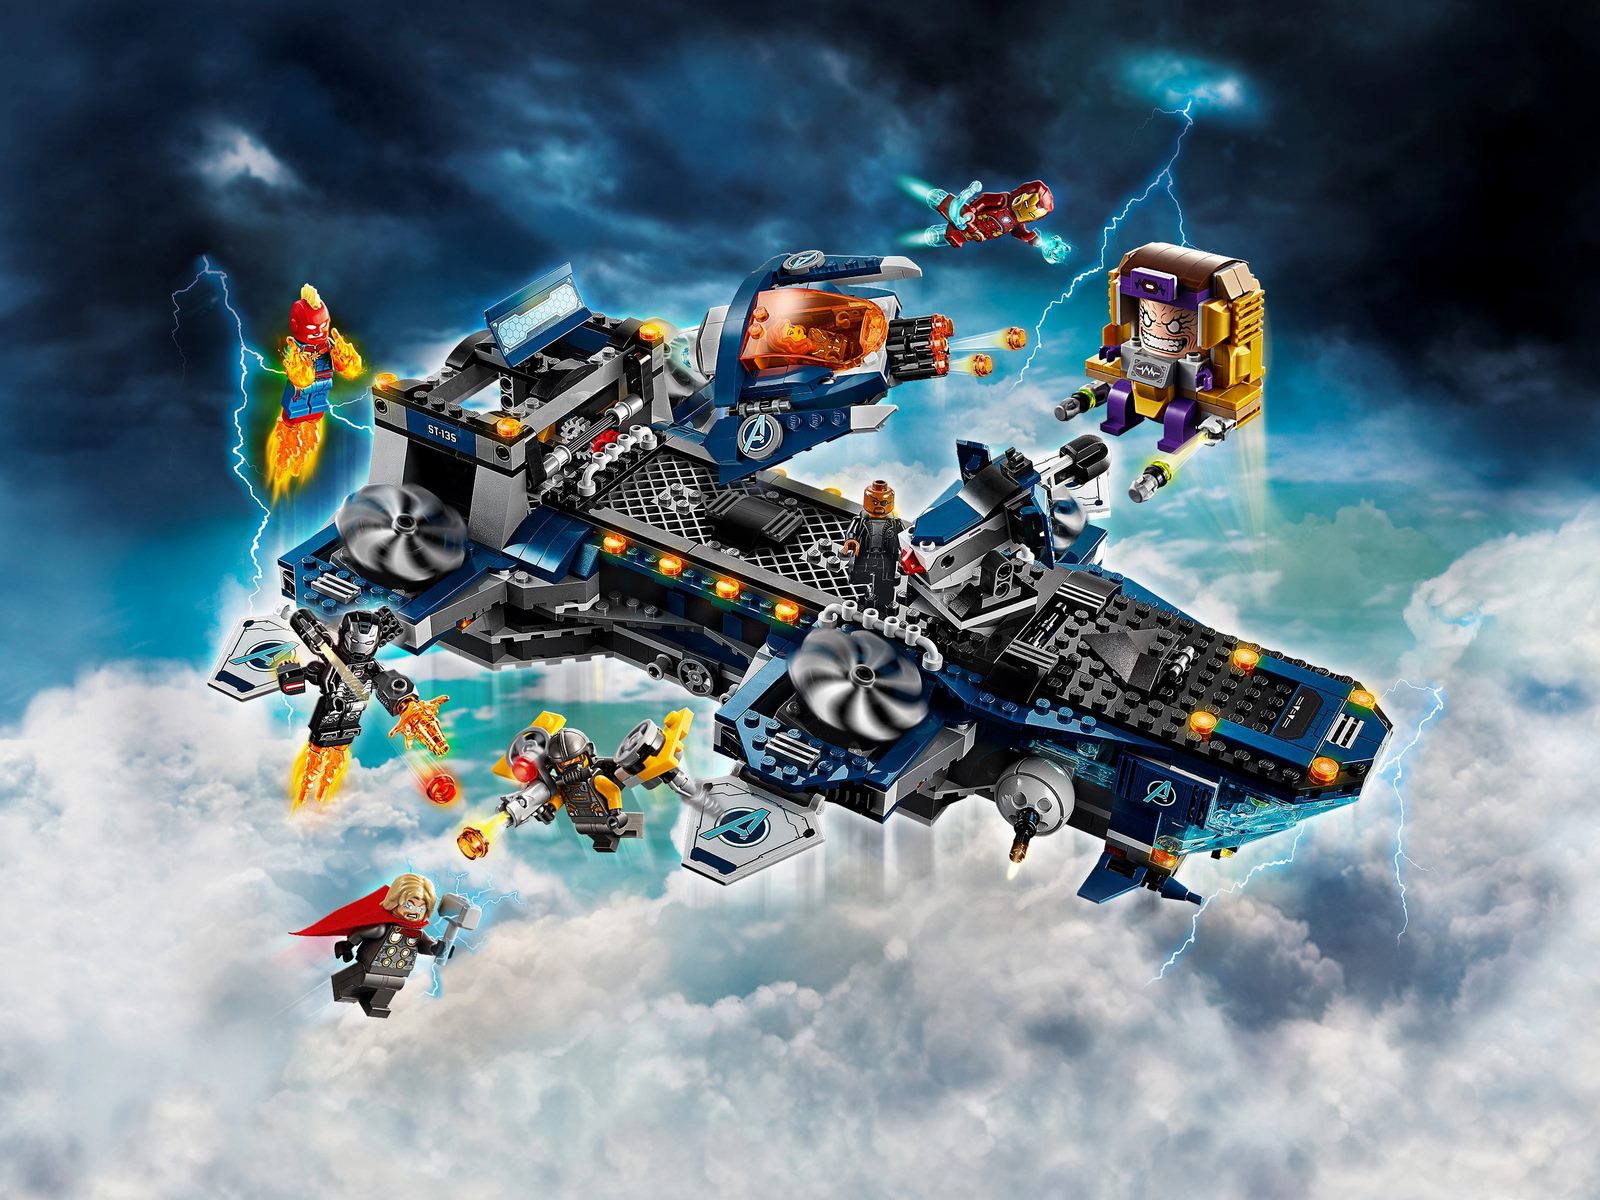 Конструктор LEGO Super Heroes «Геликарриер» 76153 / 1244 детали